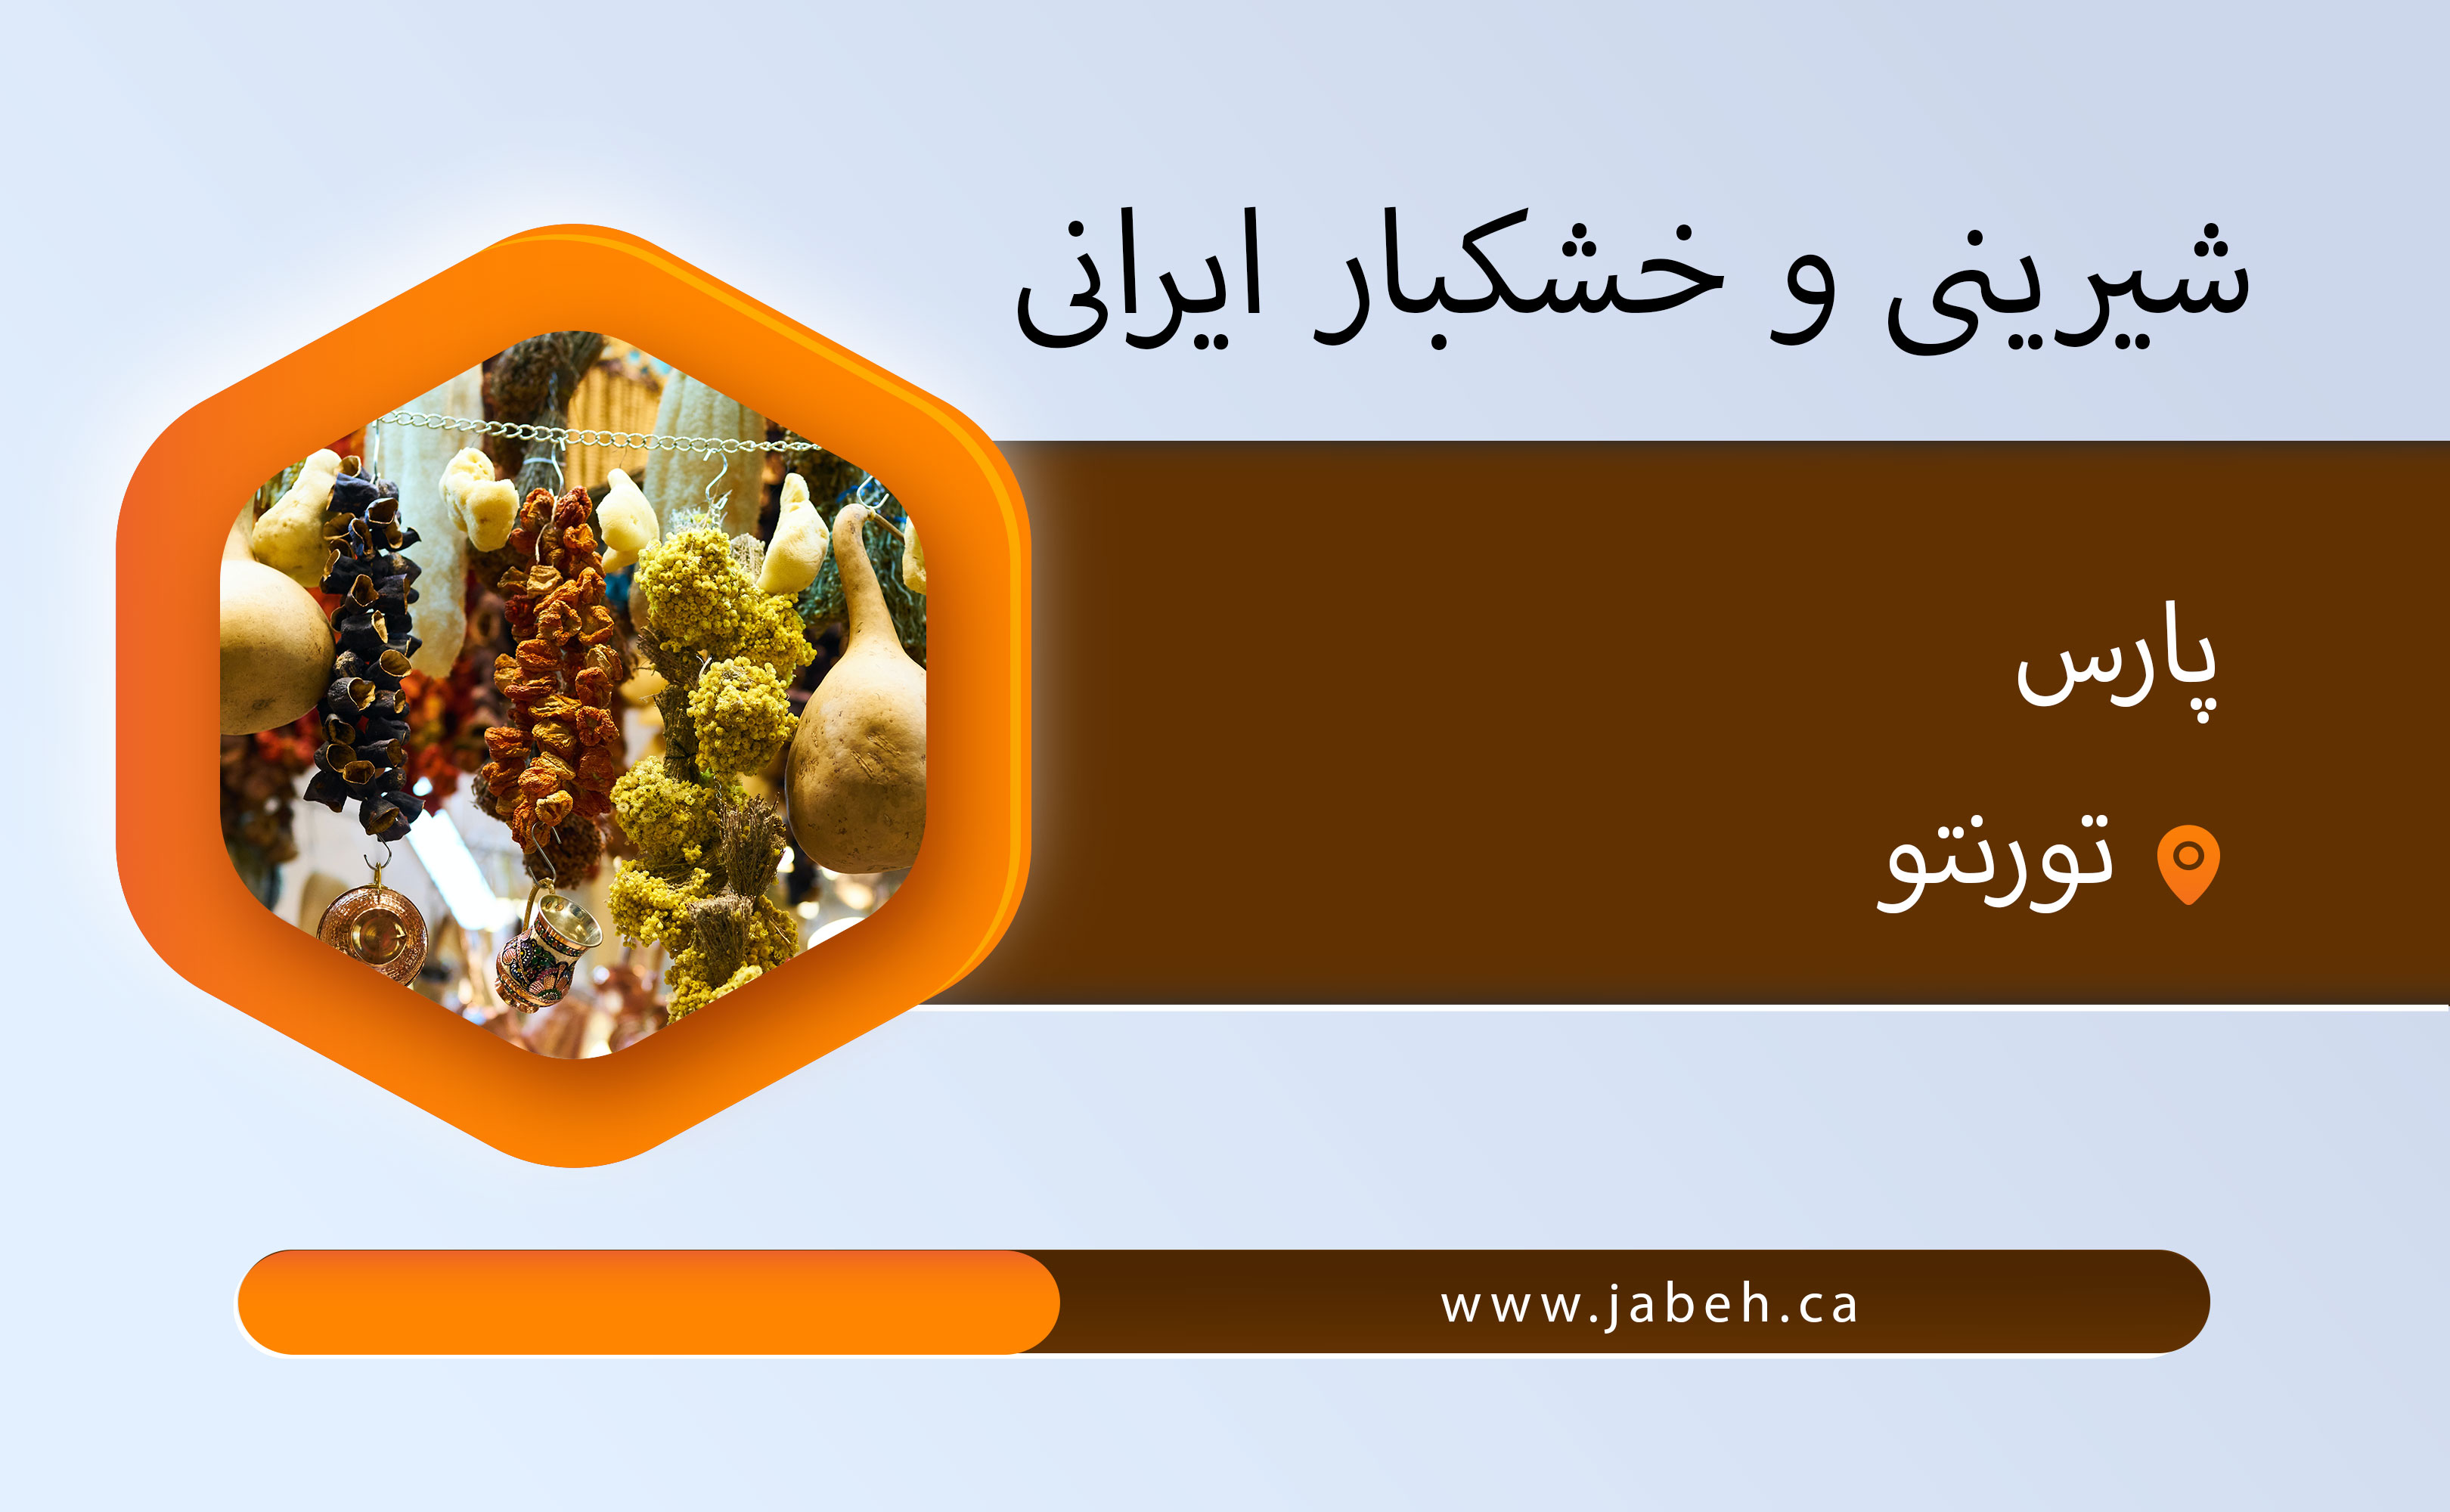 شیرینی و خشکبار ایرانی پارس در تورنتو